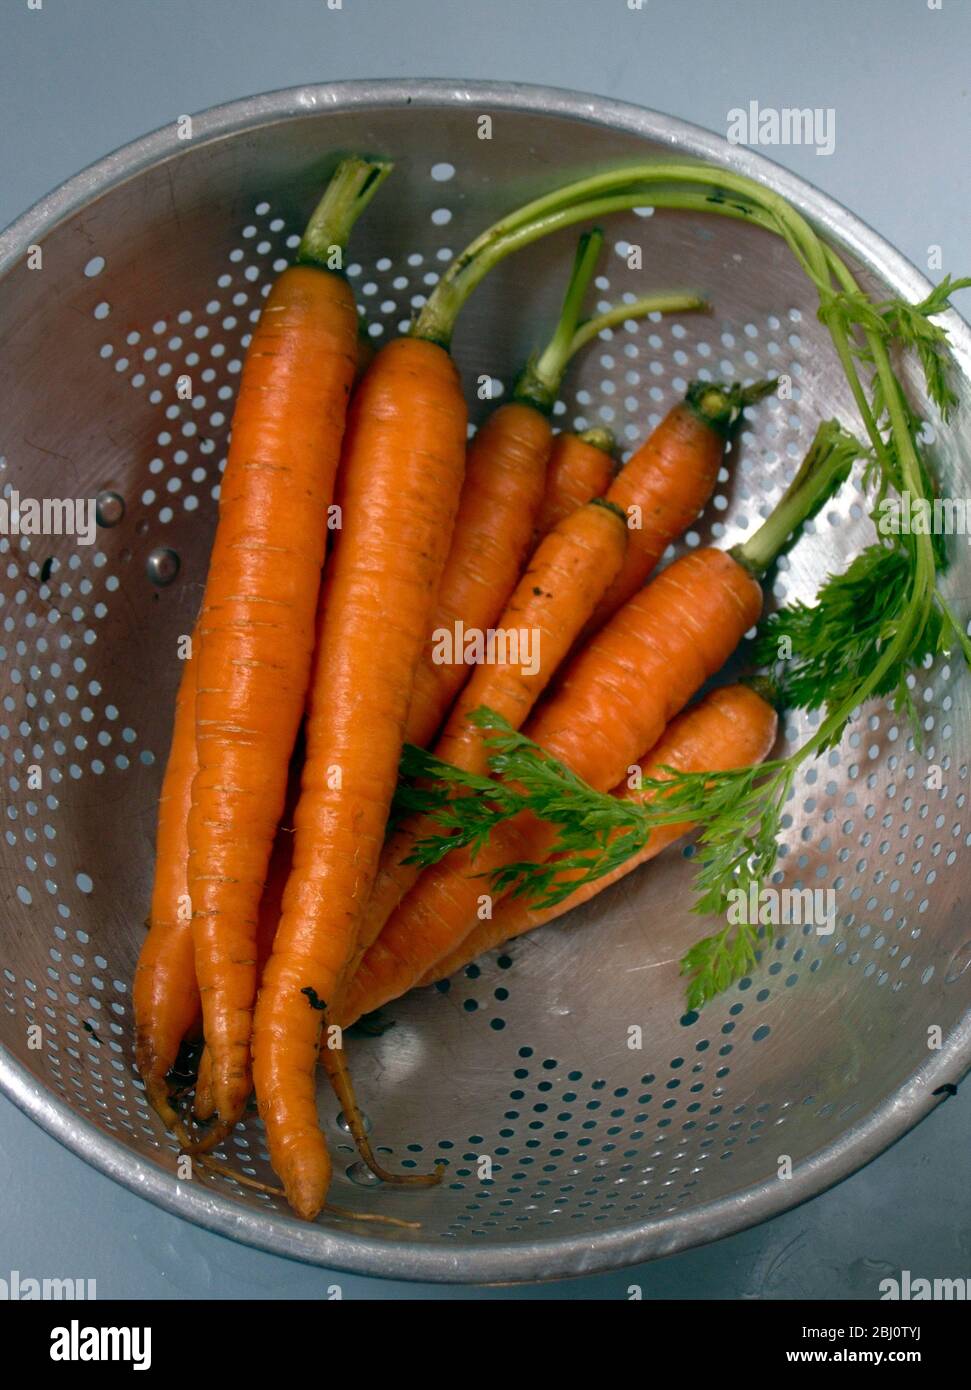 Bund frischer junger Karotten mit Tops, in altem Aluminiumsieb abtropfen lassen - Stockfoto